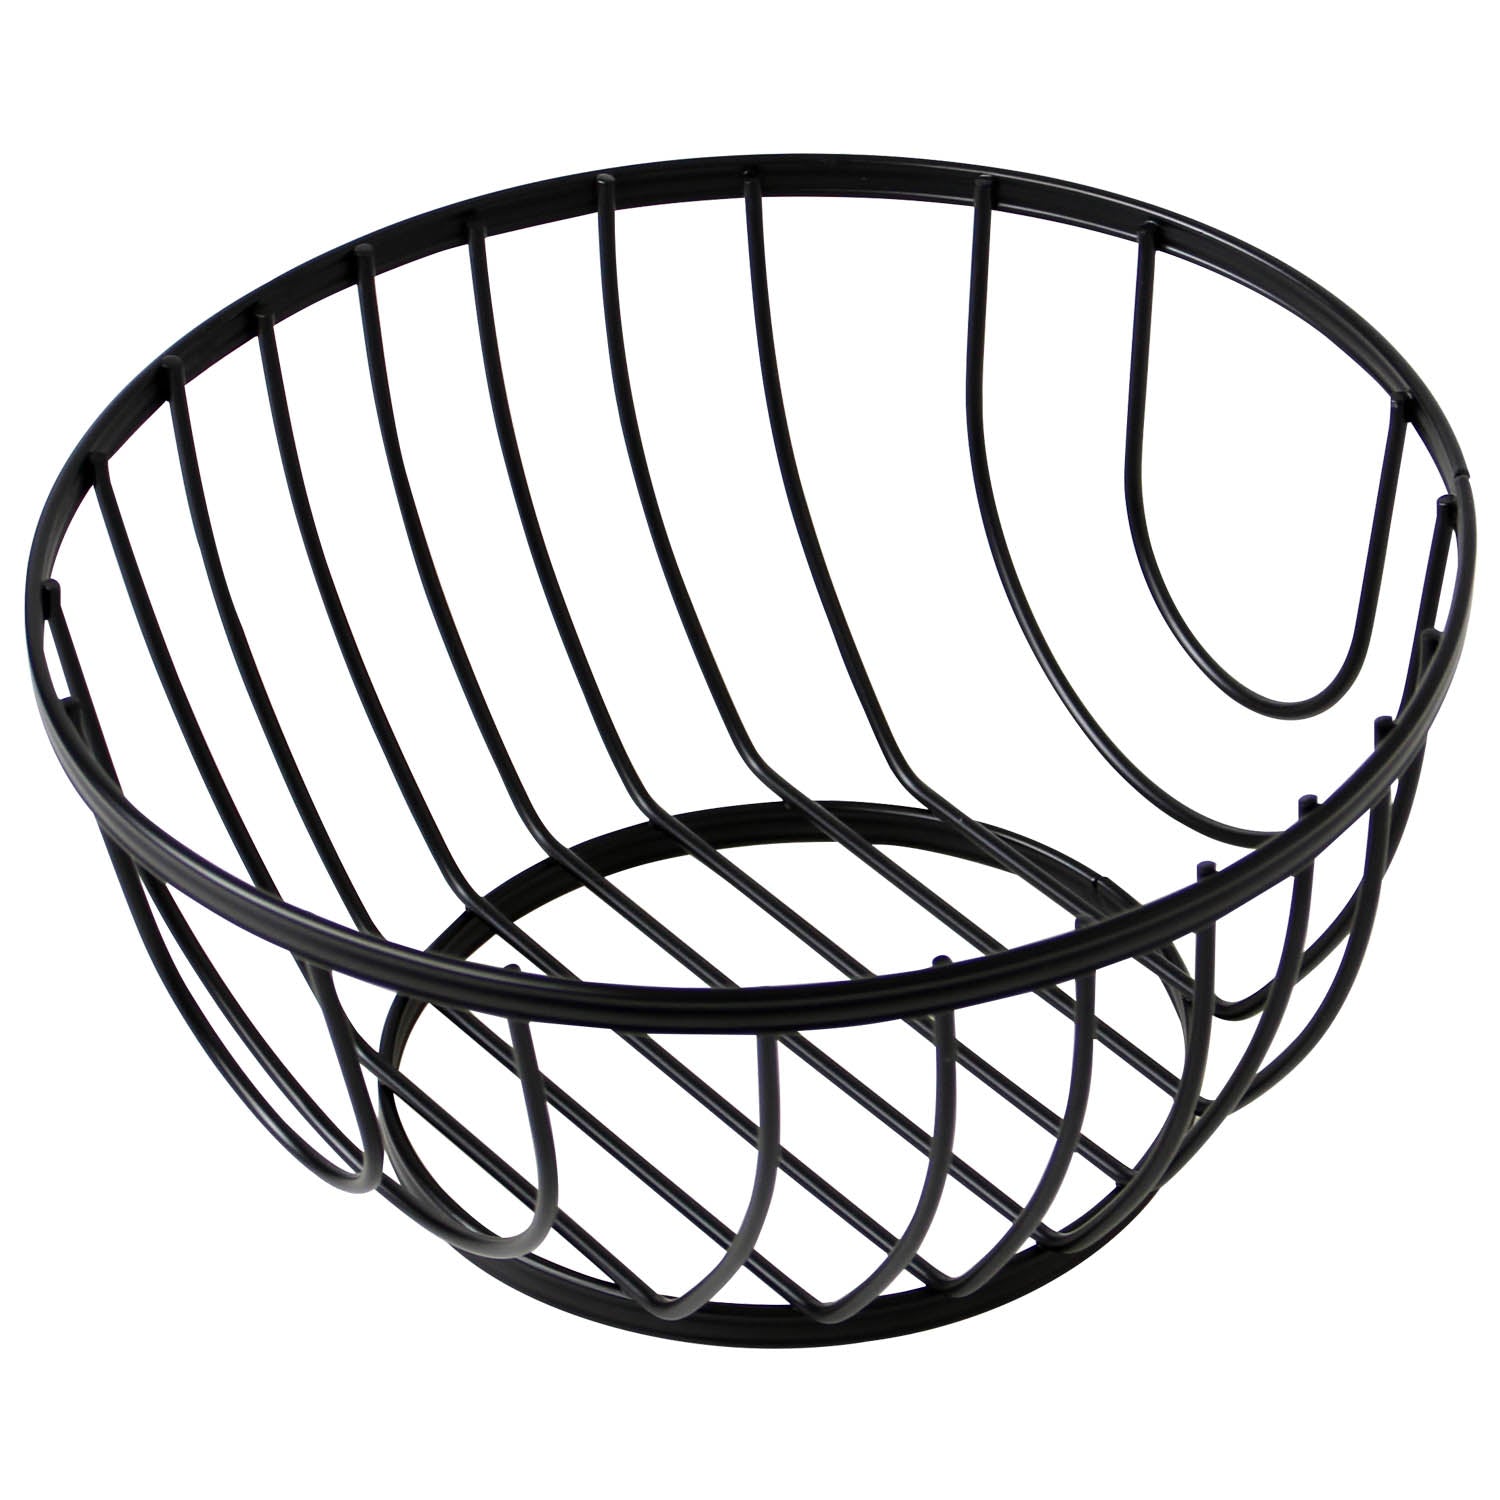 Black Flat Iron Metal Round Fruit Basket